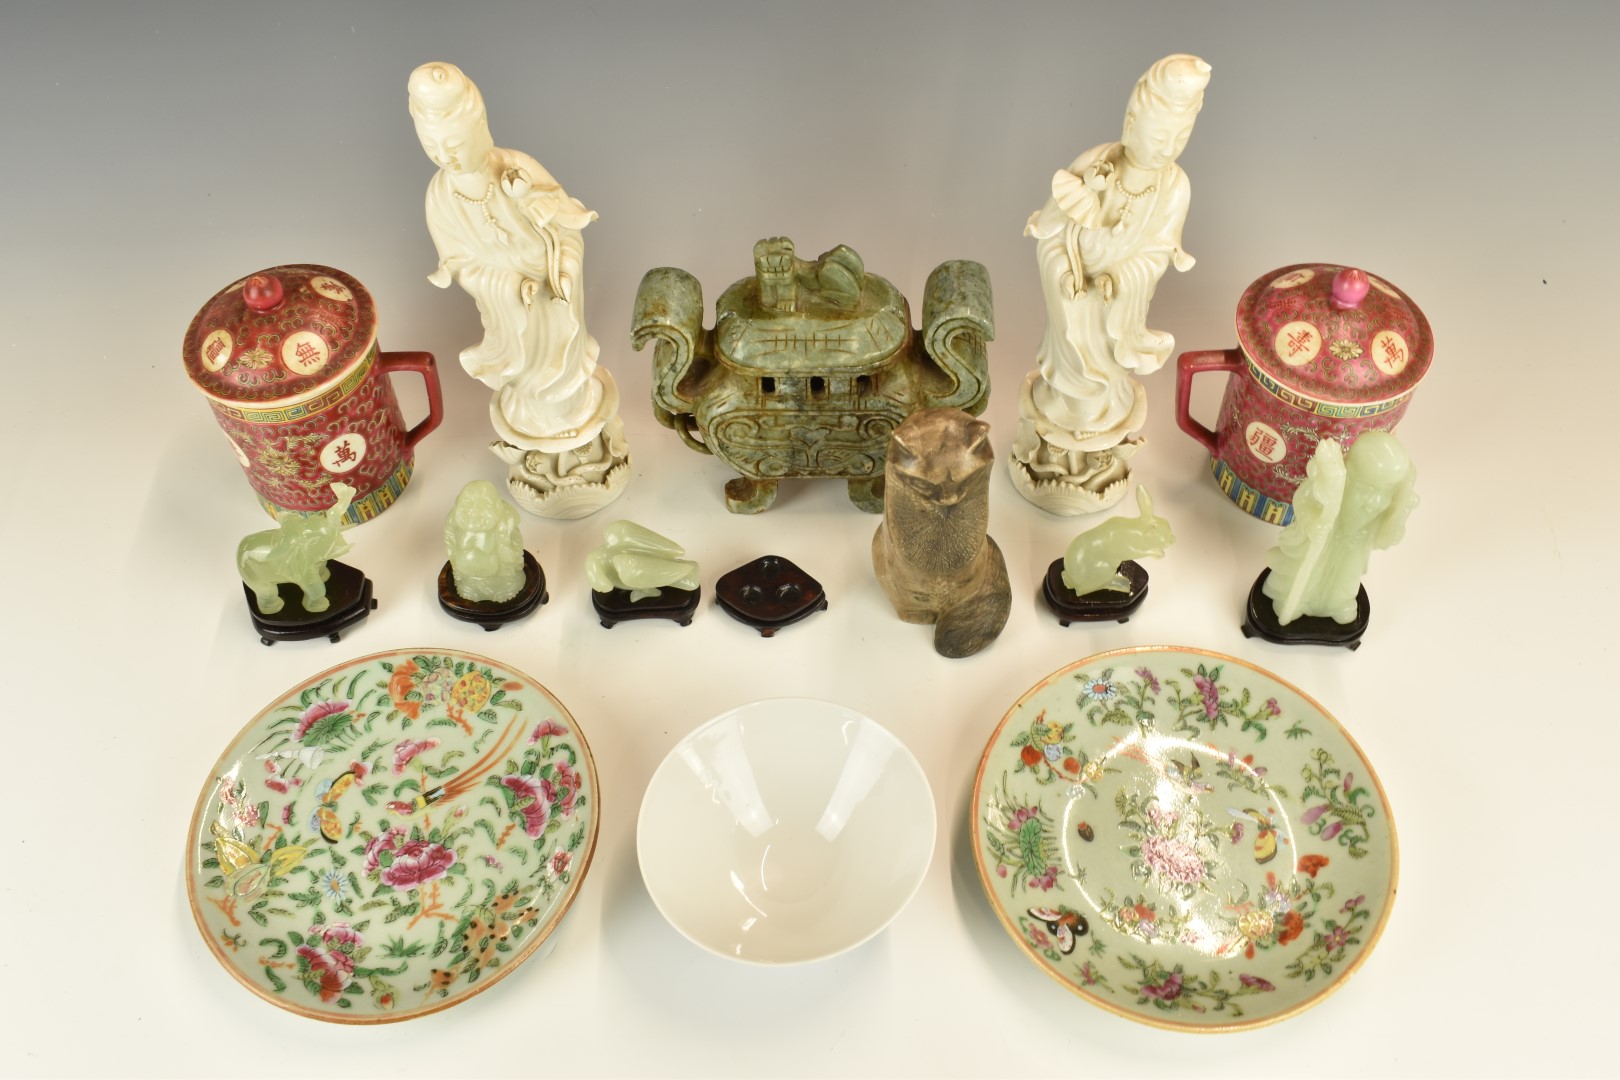 Collection of Chinese ceramics, jadeite / jade, blanc de chine etc, tallest 27cm - Image 2 of 4